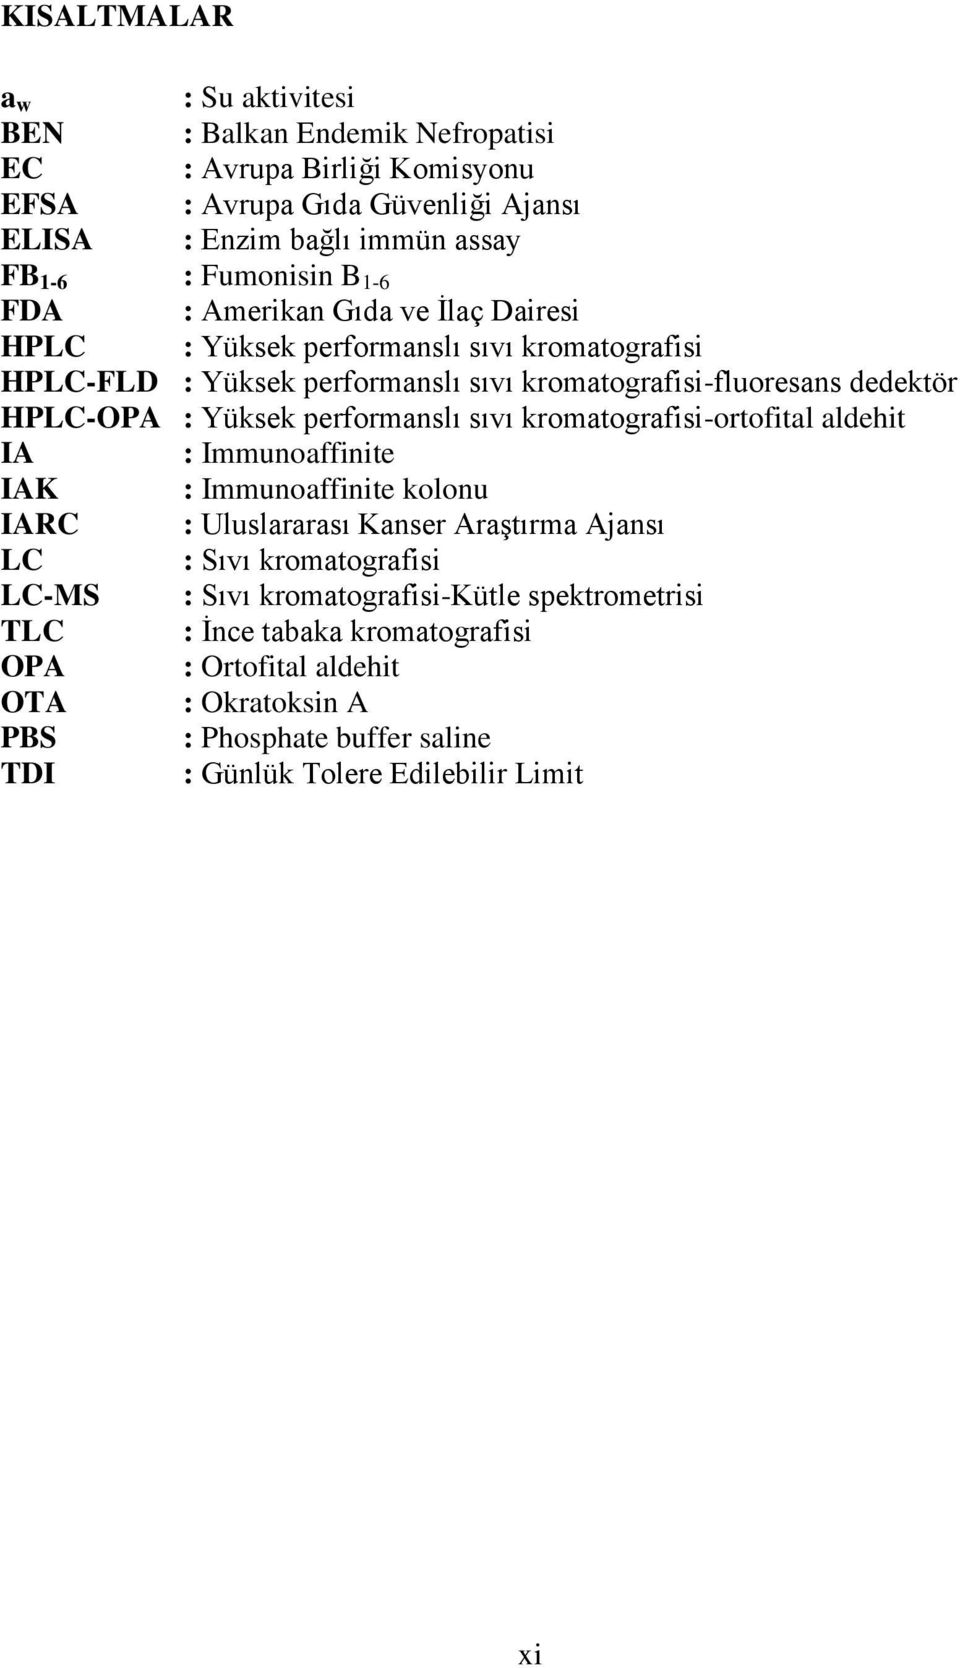 Yüksek performanslı sıvı kromatografisi-ortofital aldehit IA : Immunoaffinite IAK : Immunoaffinite kolonu IARC : Uluslararası Kanser Araştırma Ajansı LC : Sıvı kromatografisi LC-MS